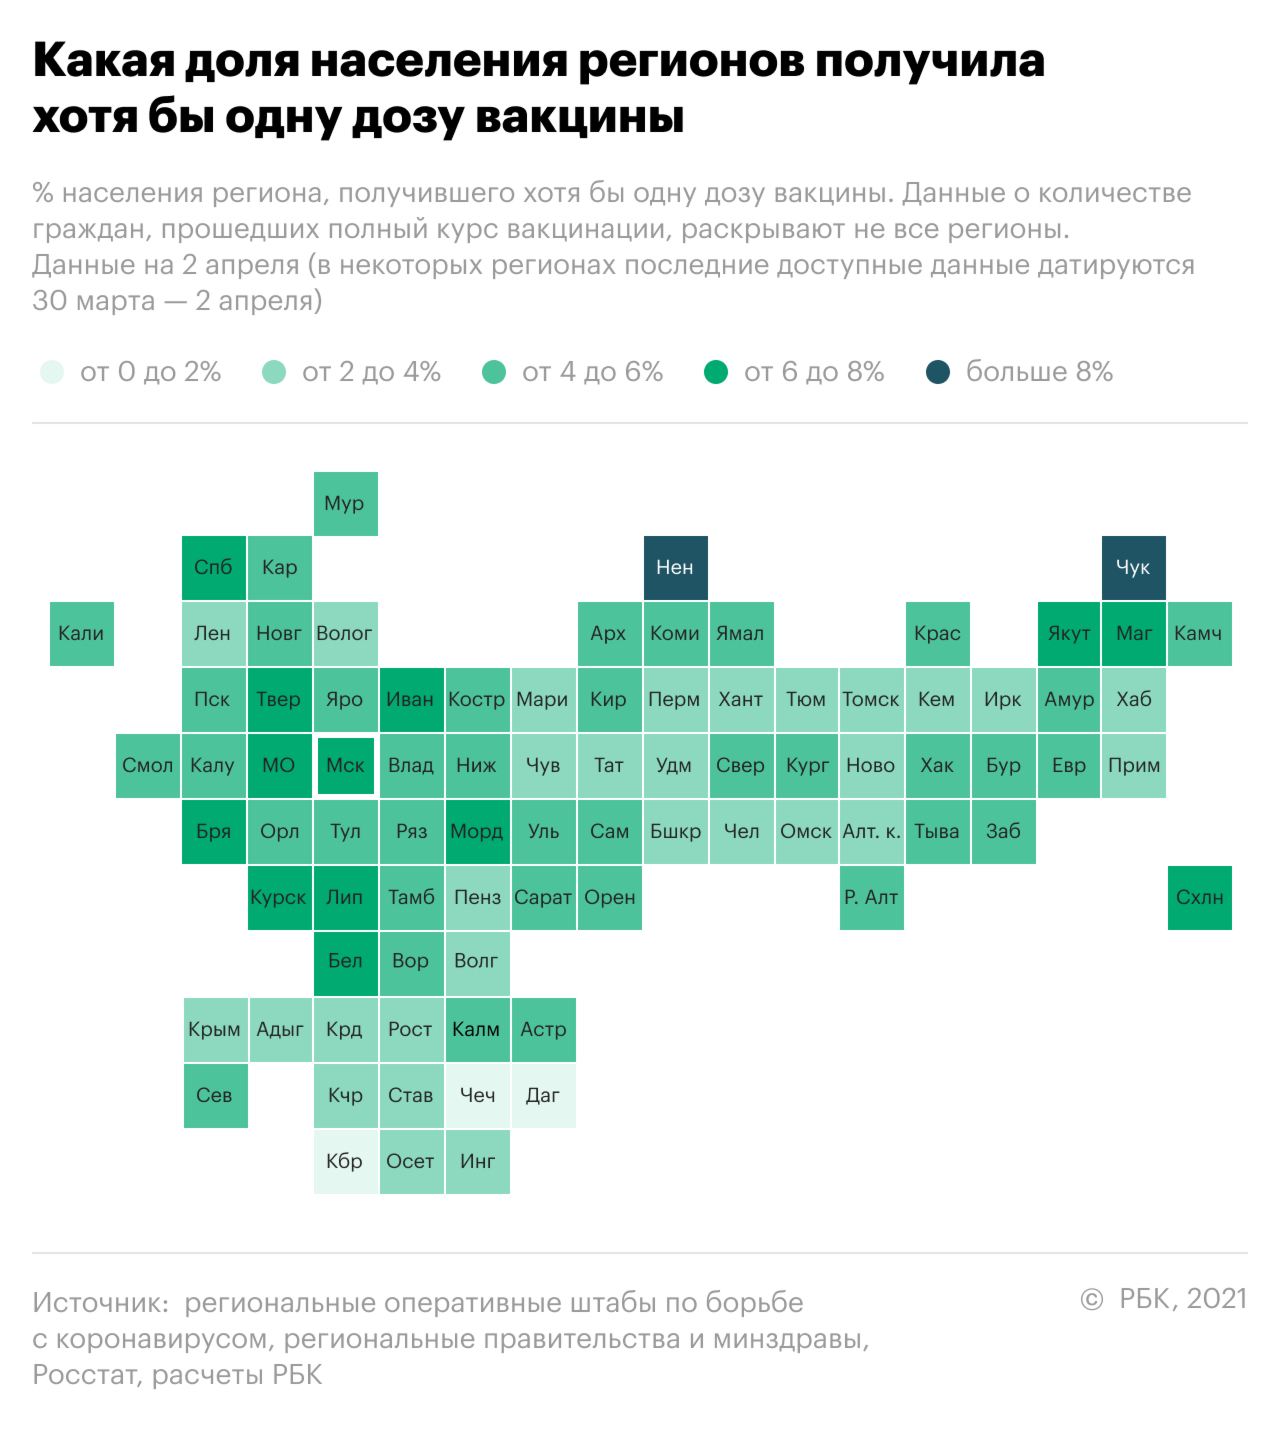 Как проходит вакцинация от COVID-19 в России. Инфографика